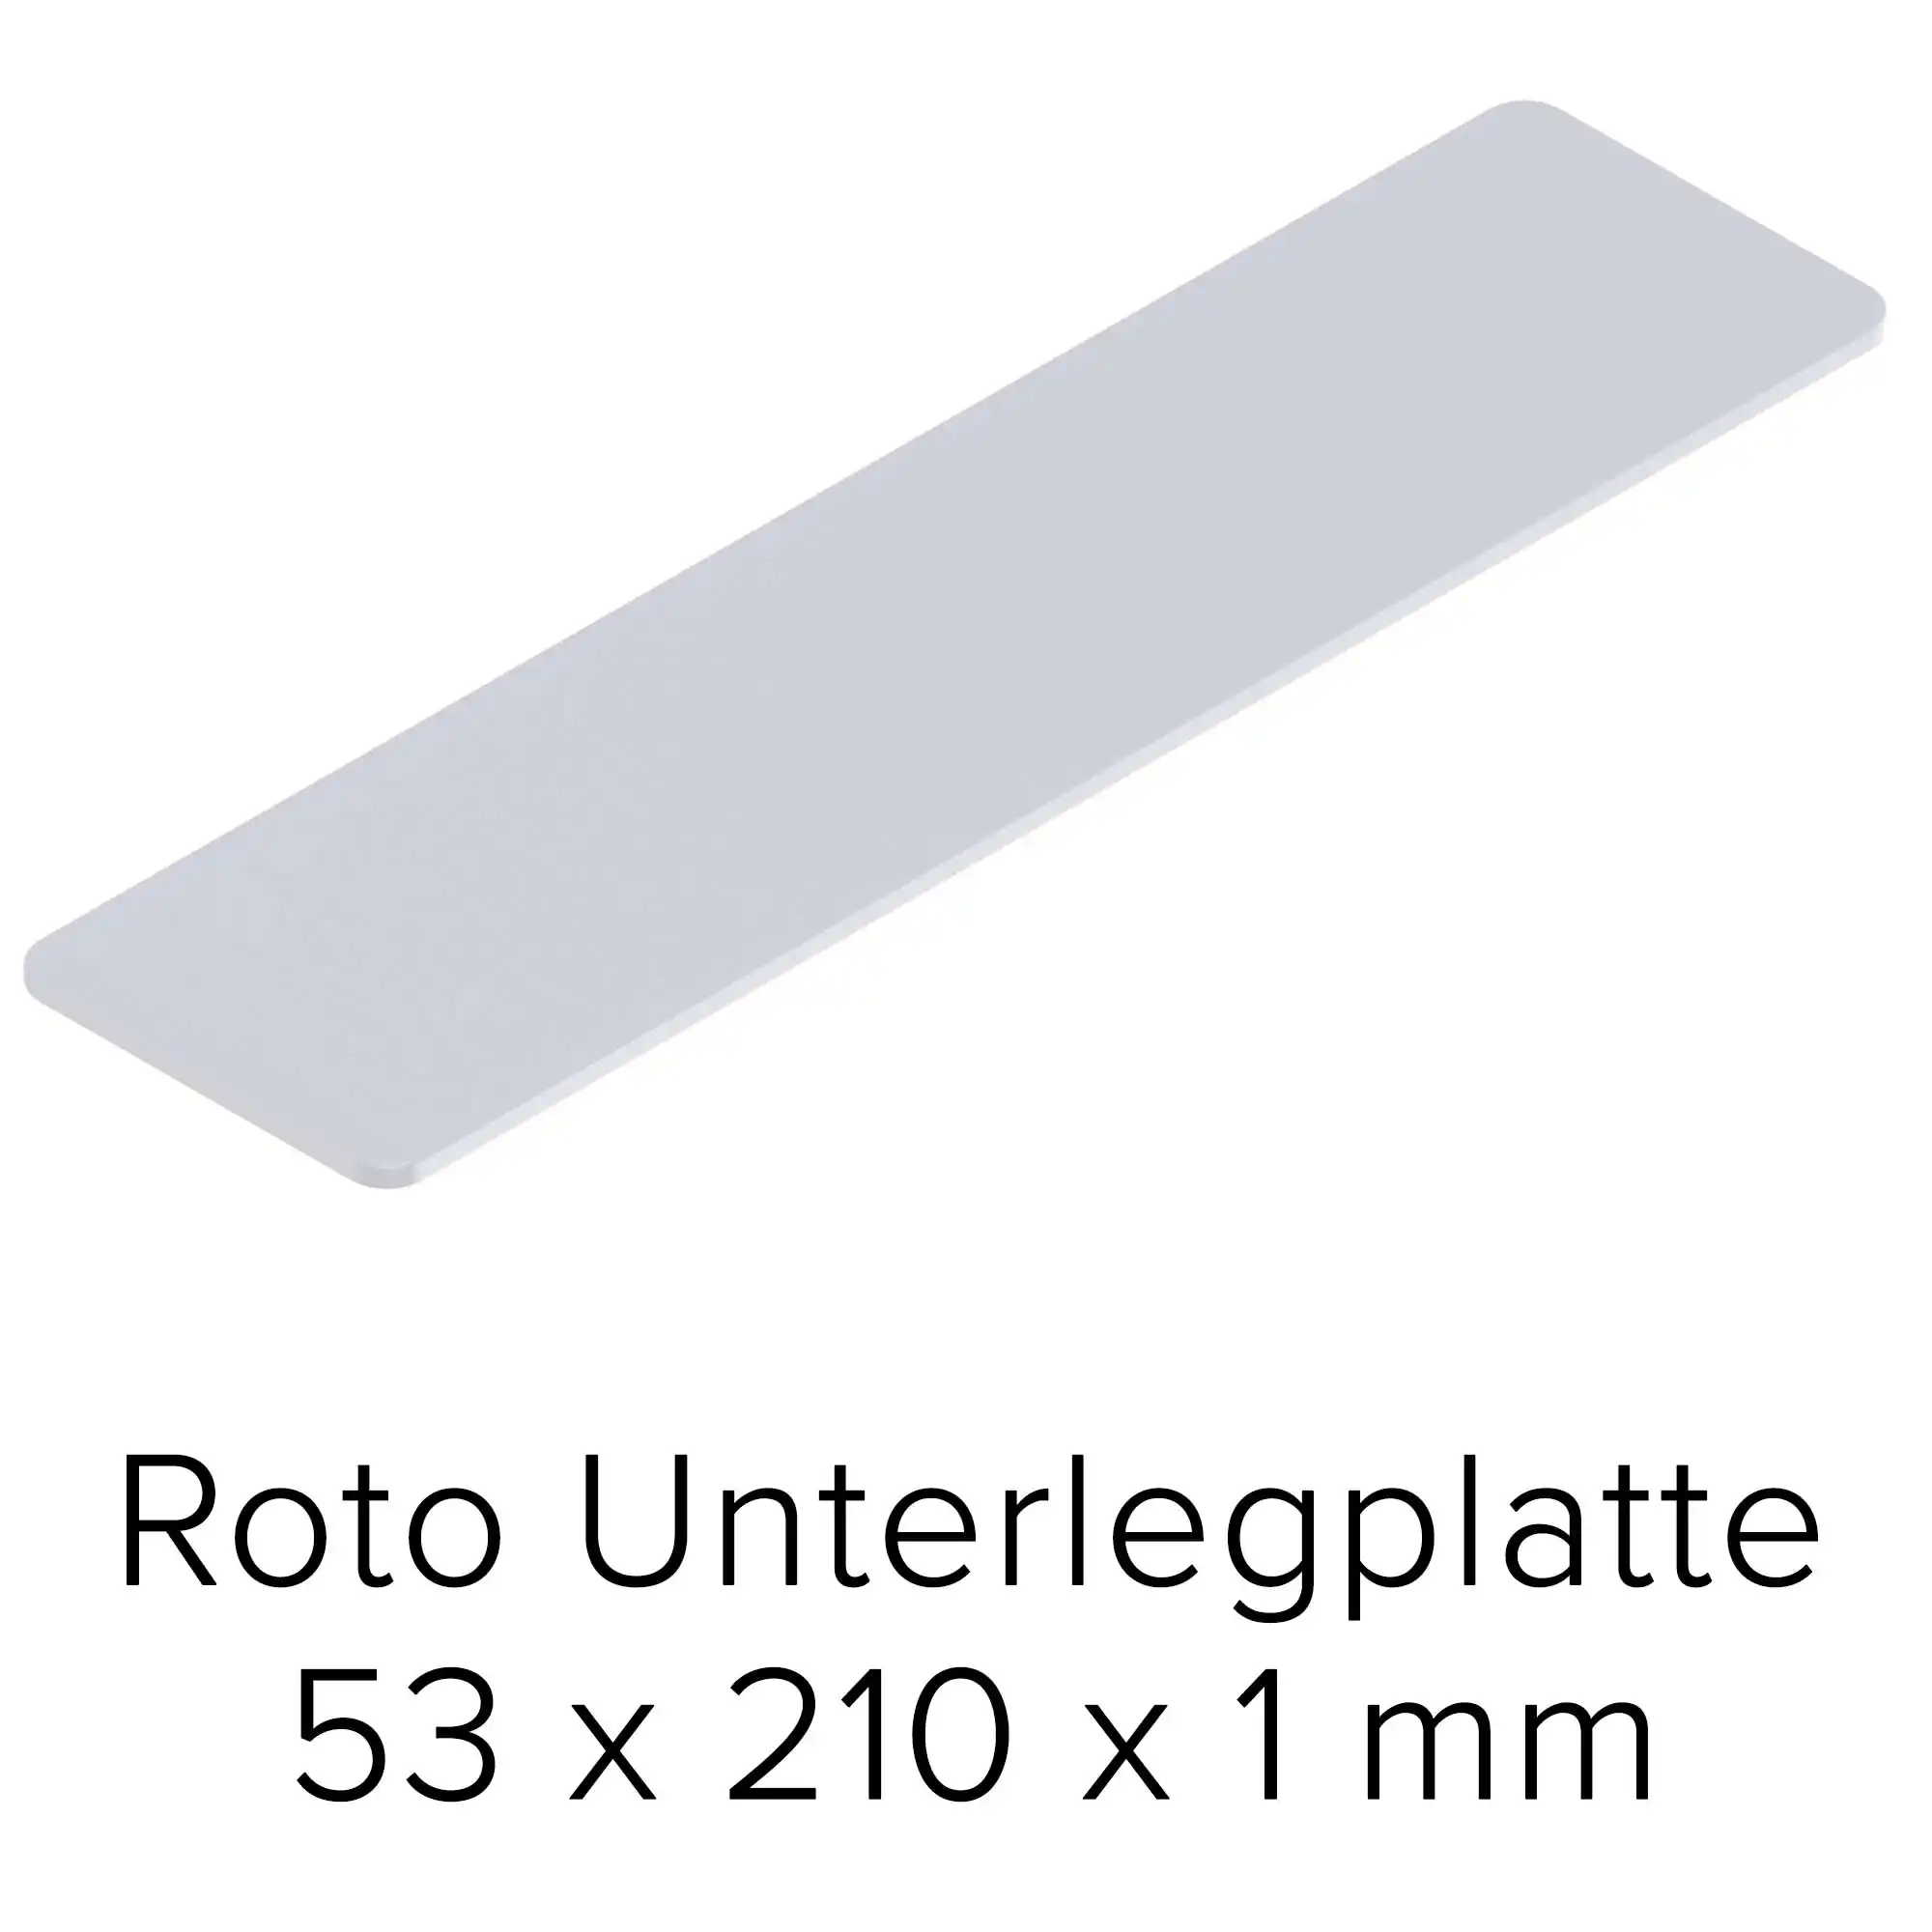 Roto Unterlegplatte 53 x 210 x 1 mm